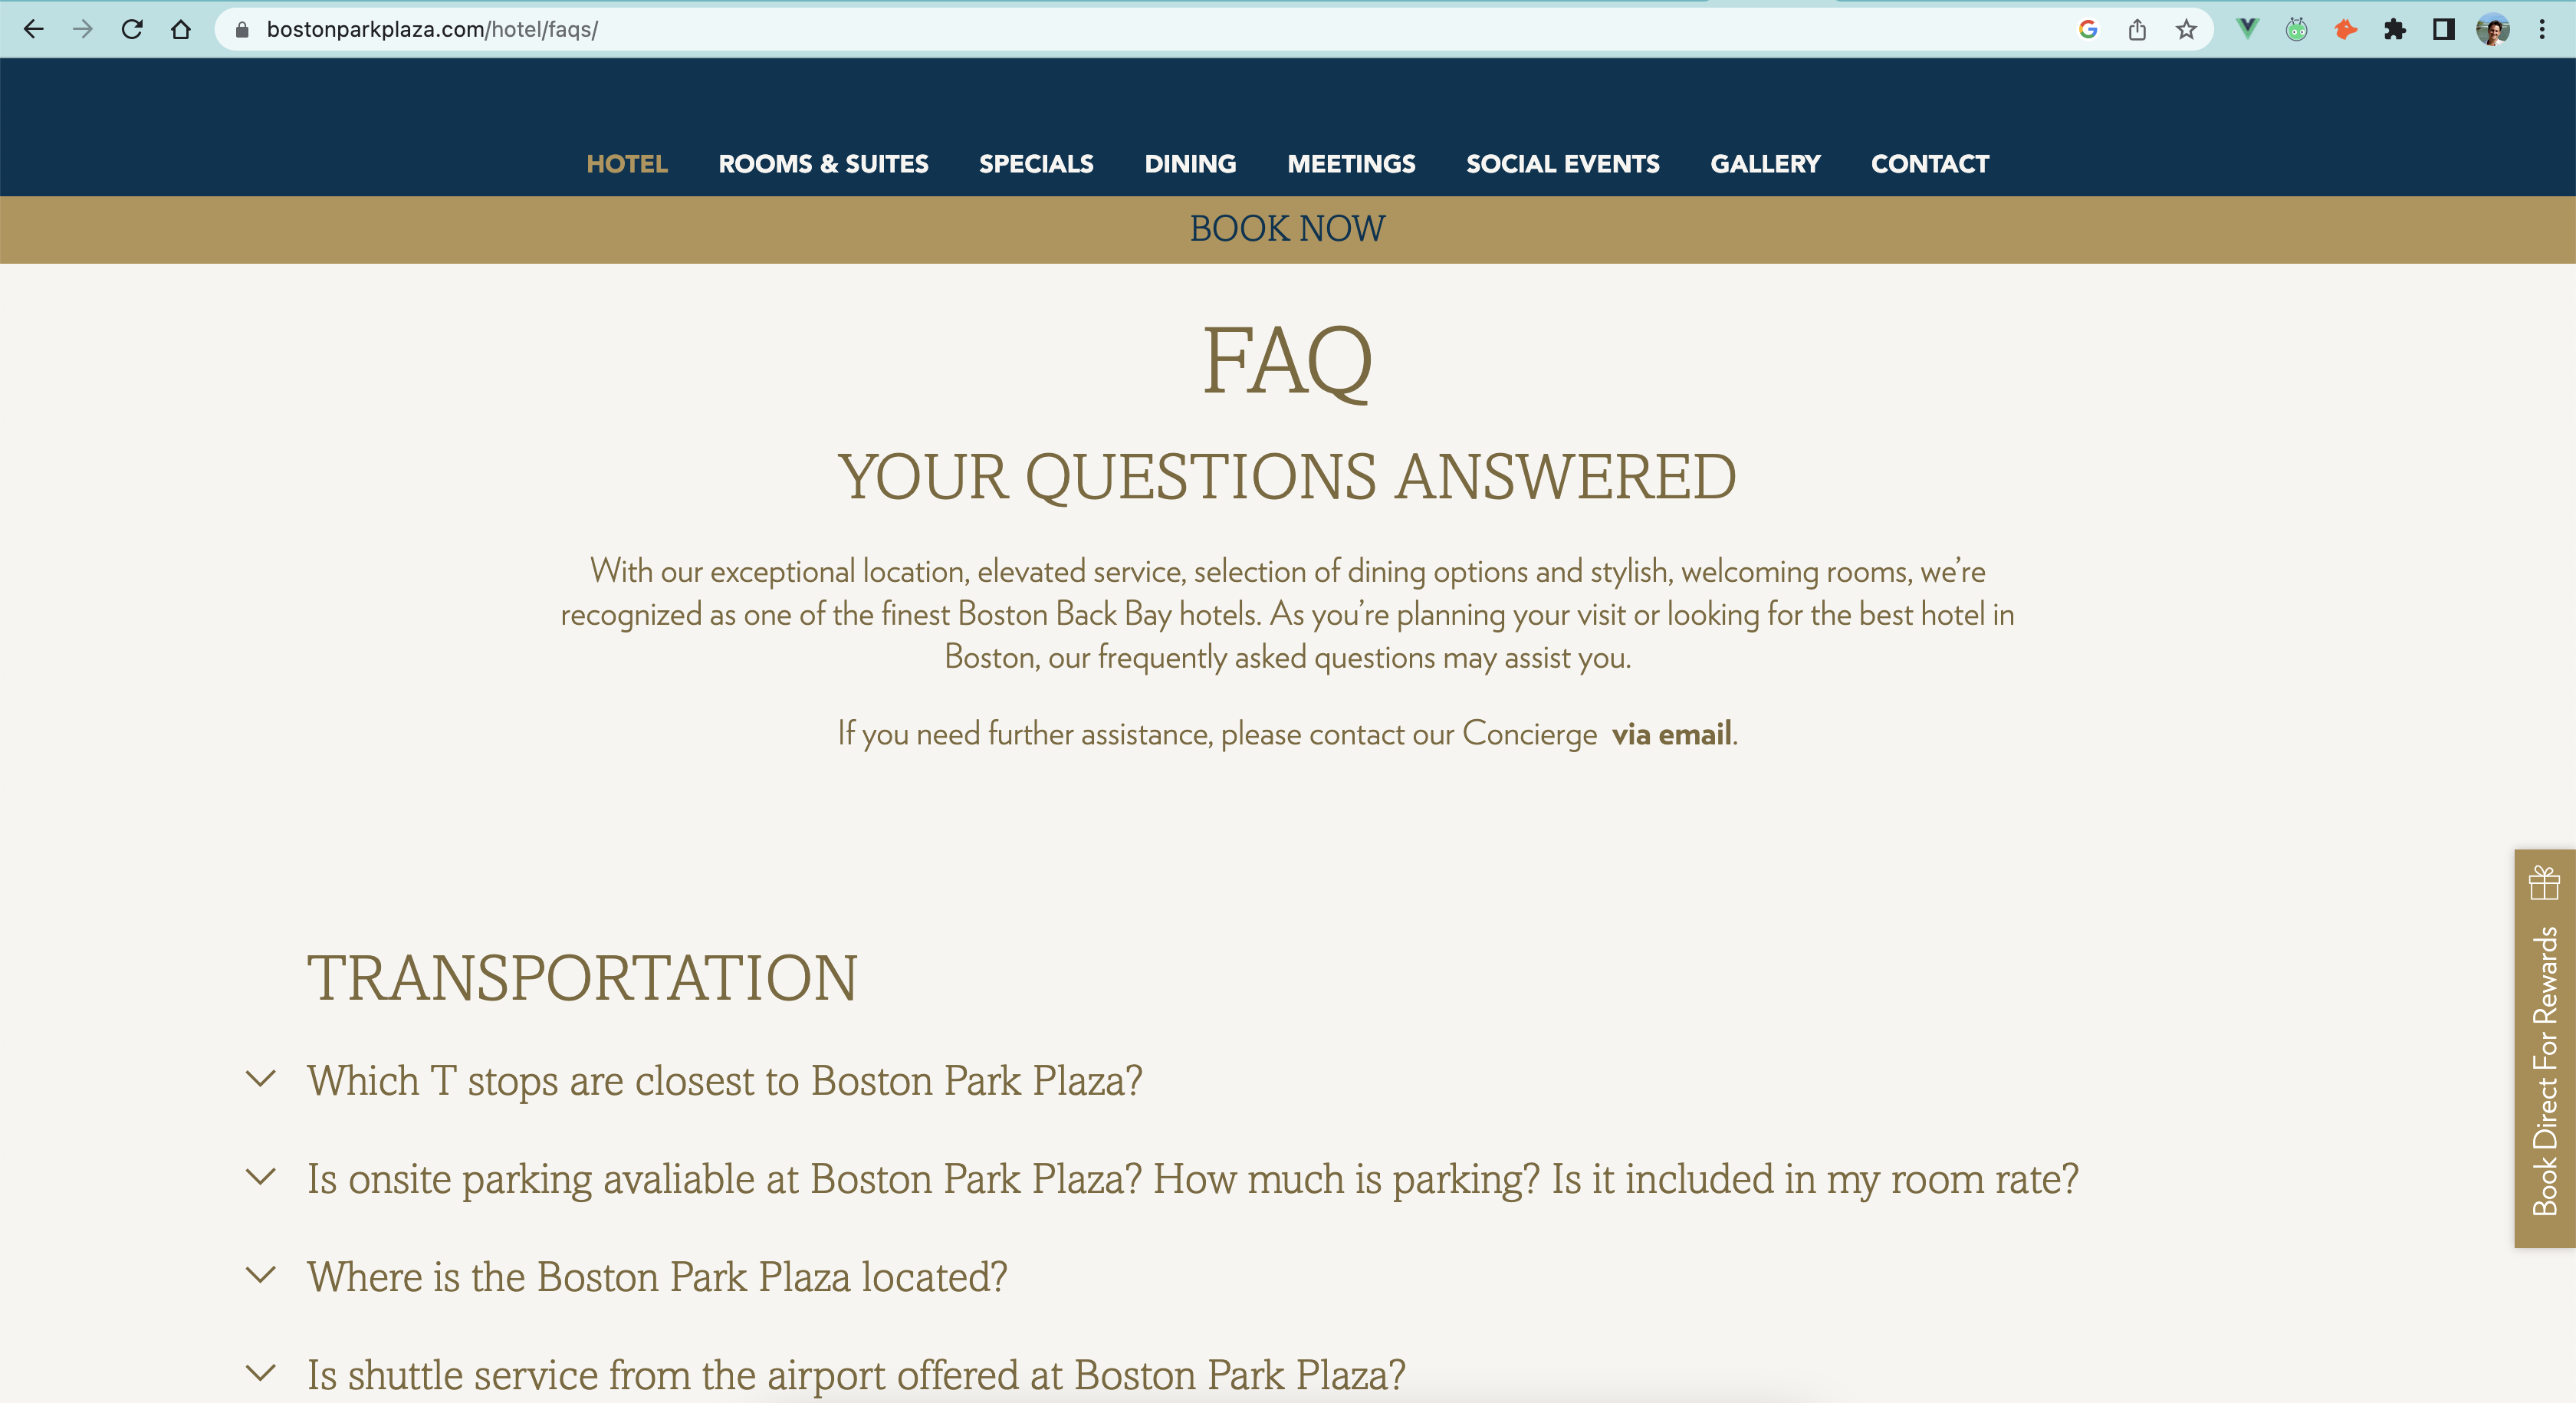 Boston Park Plaza FAQ